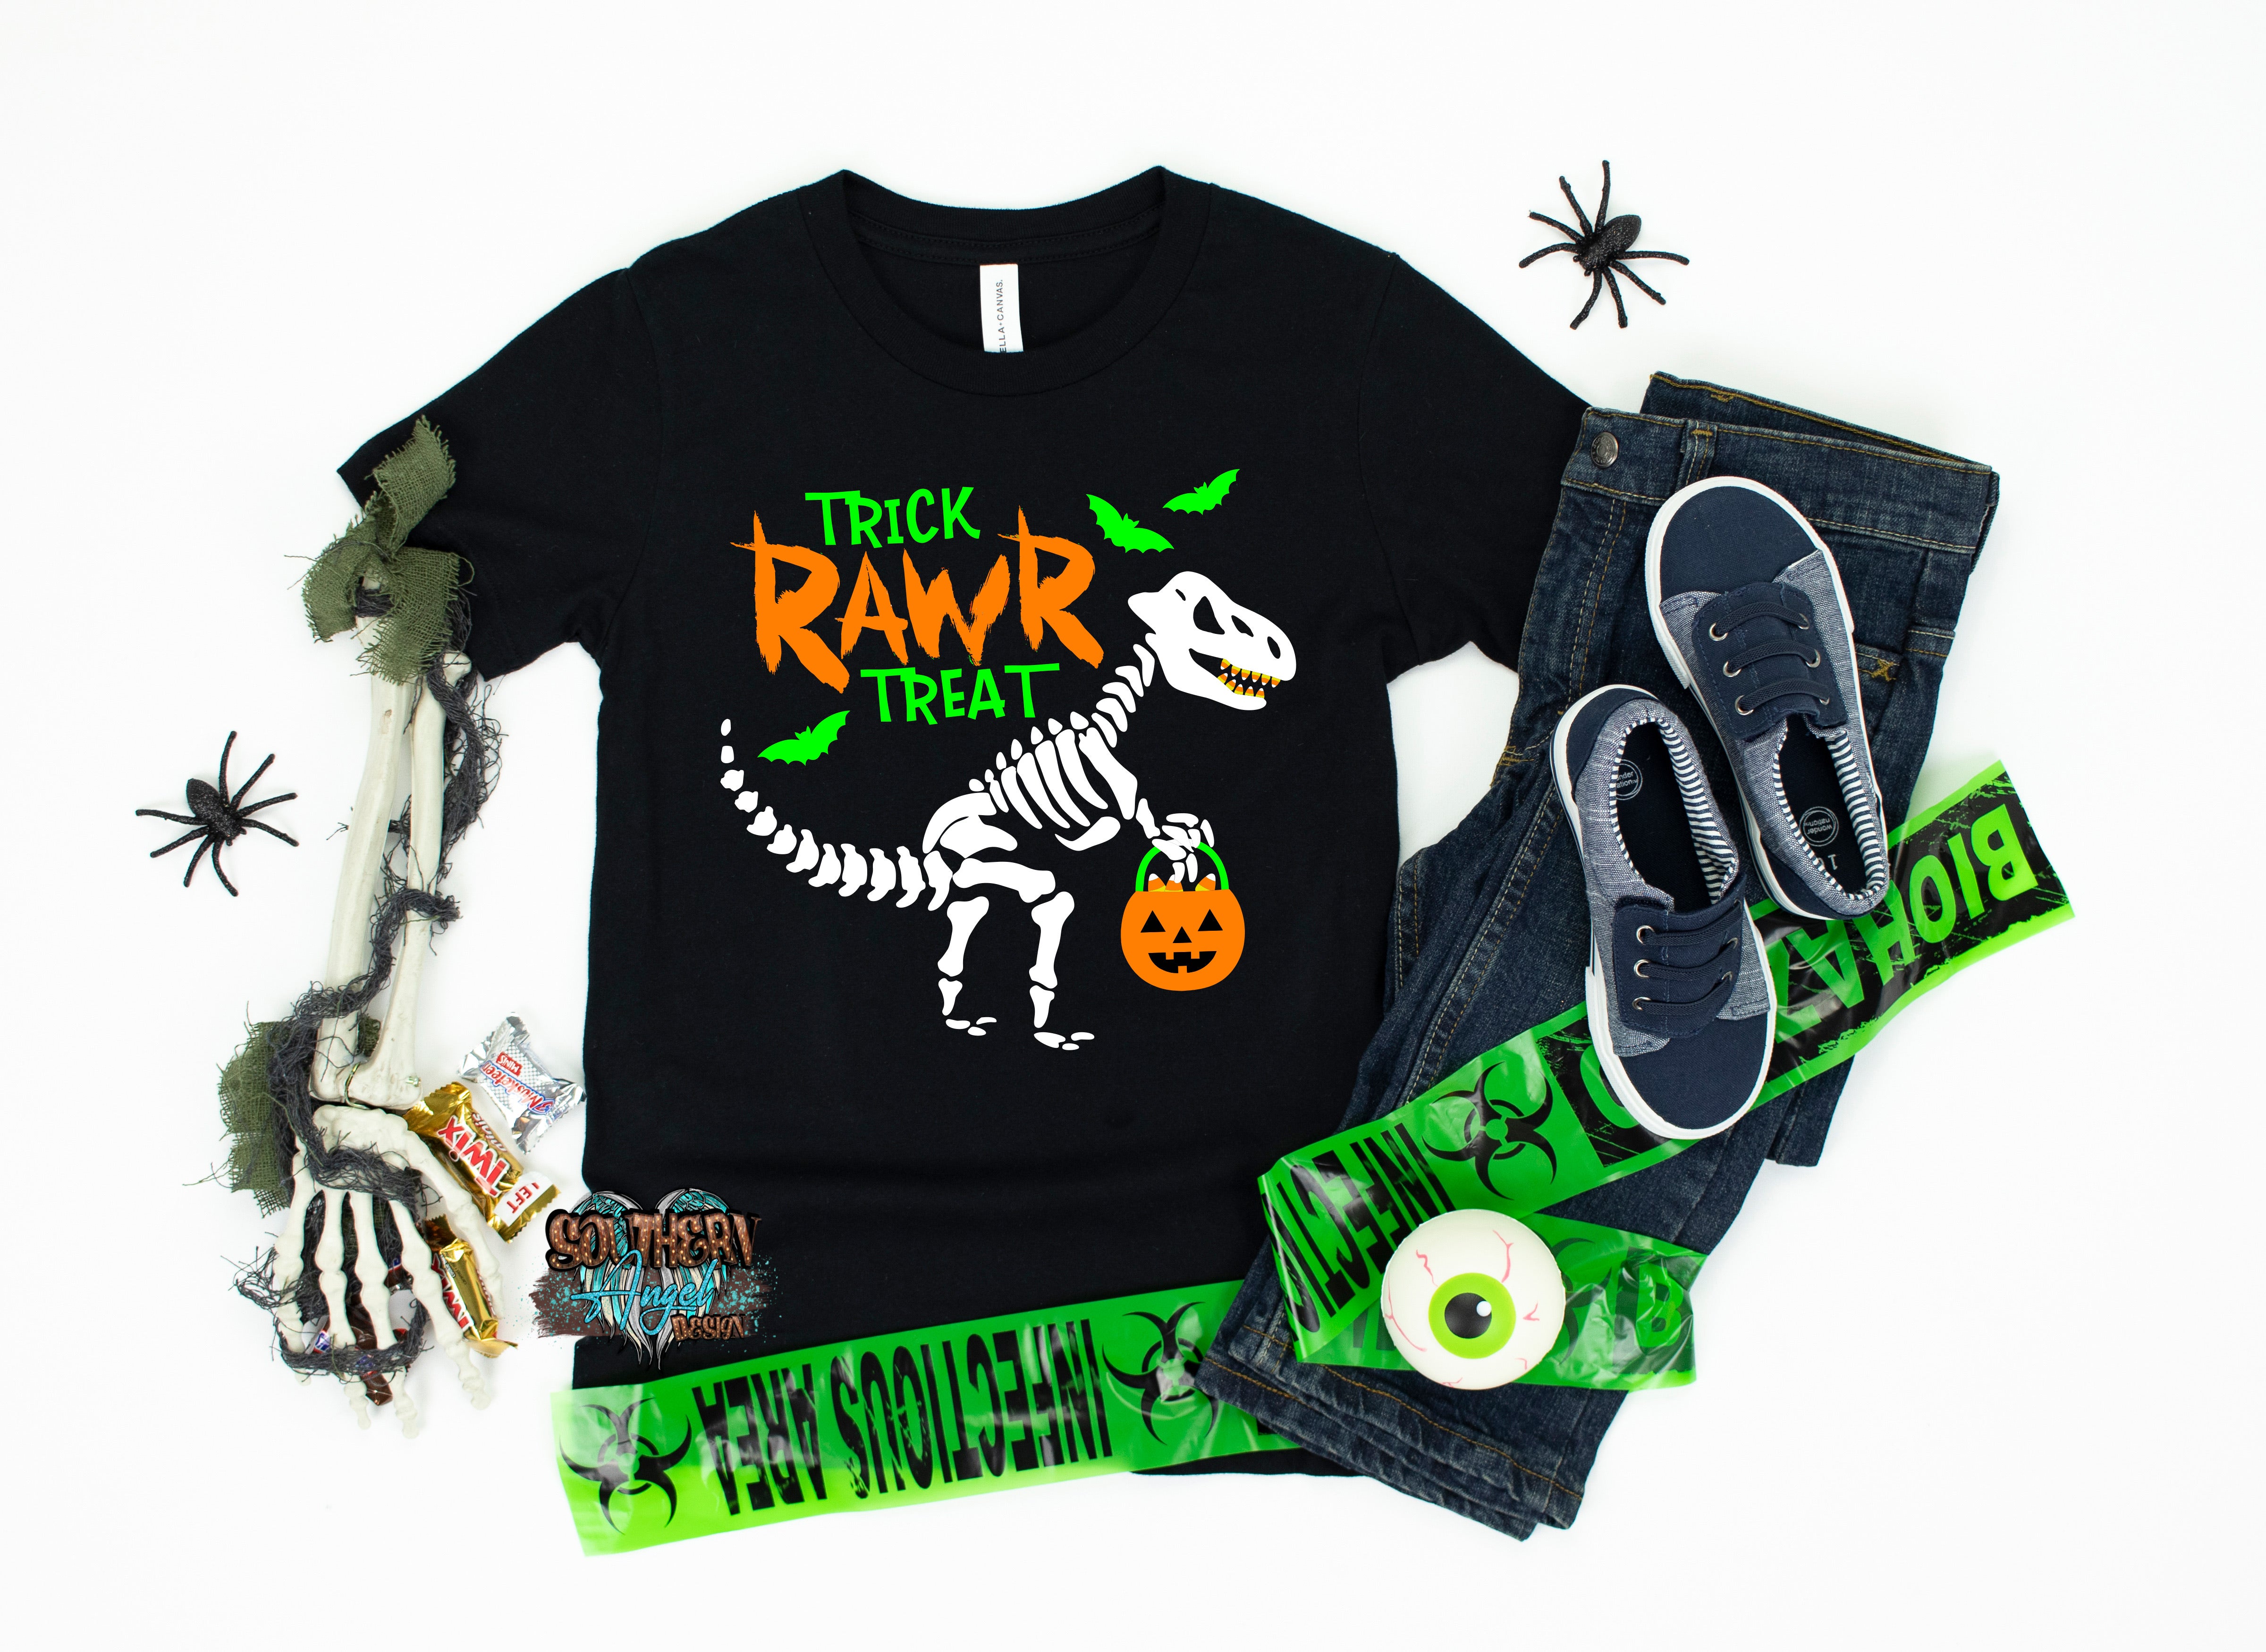 Black Trick Rawr Treat image_aaa501cb-cbe1-4df4-aaf1-43b86e8a357e.jpg trick-rawr-treat-1 Kids Halloween & Fall